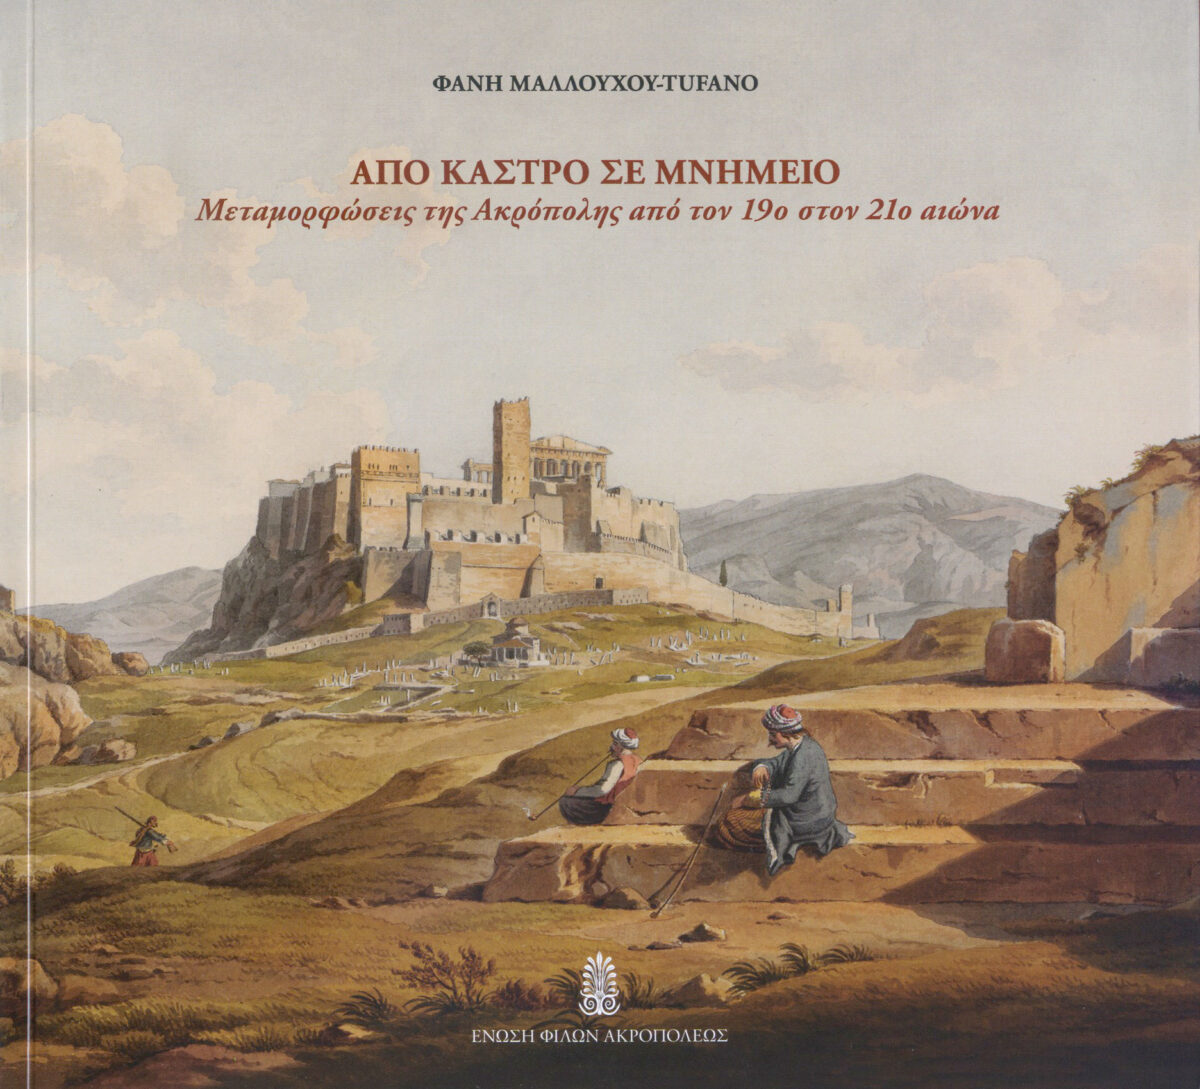 Φανή Μαλλούχου-Tufano, «Από κάστρο σε μνημείο. Μεταμορφώσεις της Ακρόπολης από τον 19ο στον 21ο αιώνα». Το εξώφυλλο της έκδοσης.